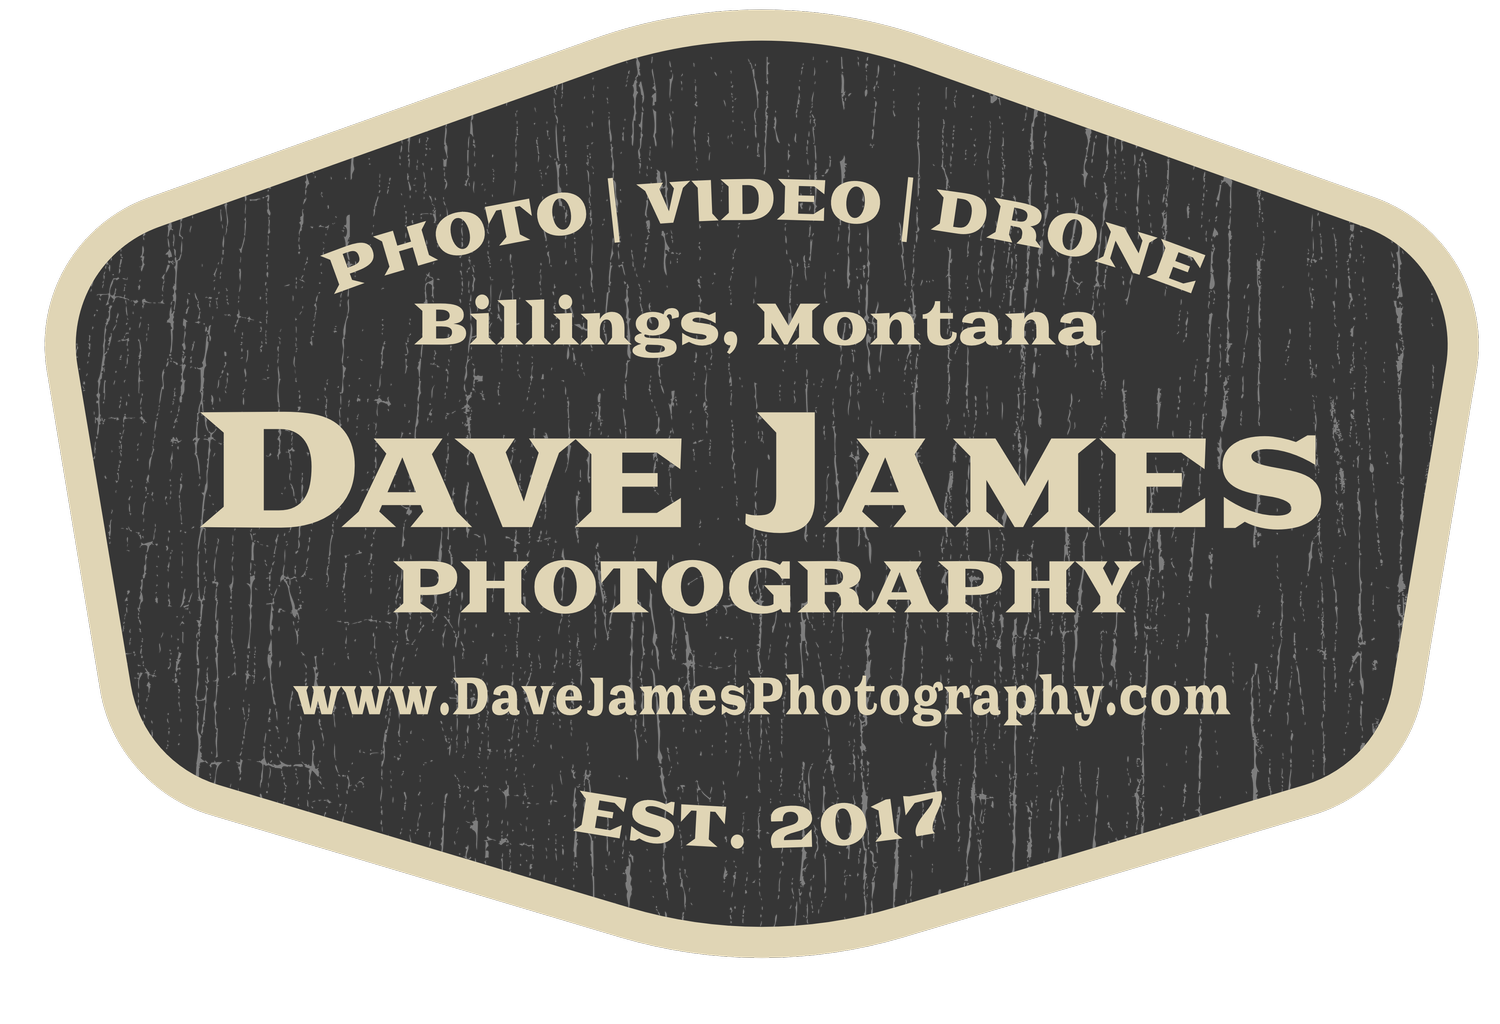 Dave James Photography | Portraits, Senior Photos, Family Photos, Dog Photography, Real Estate Photograpy